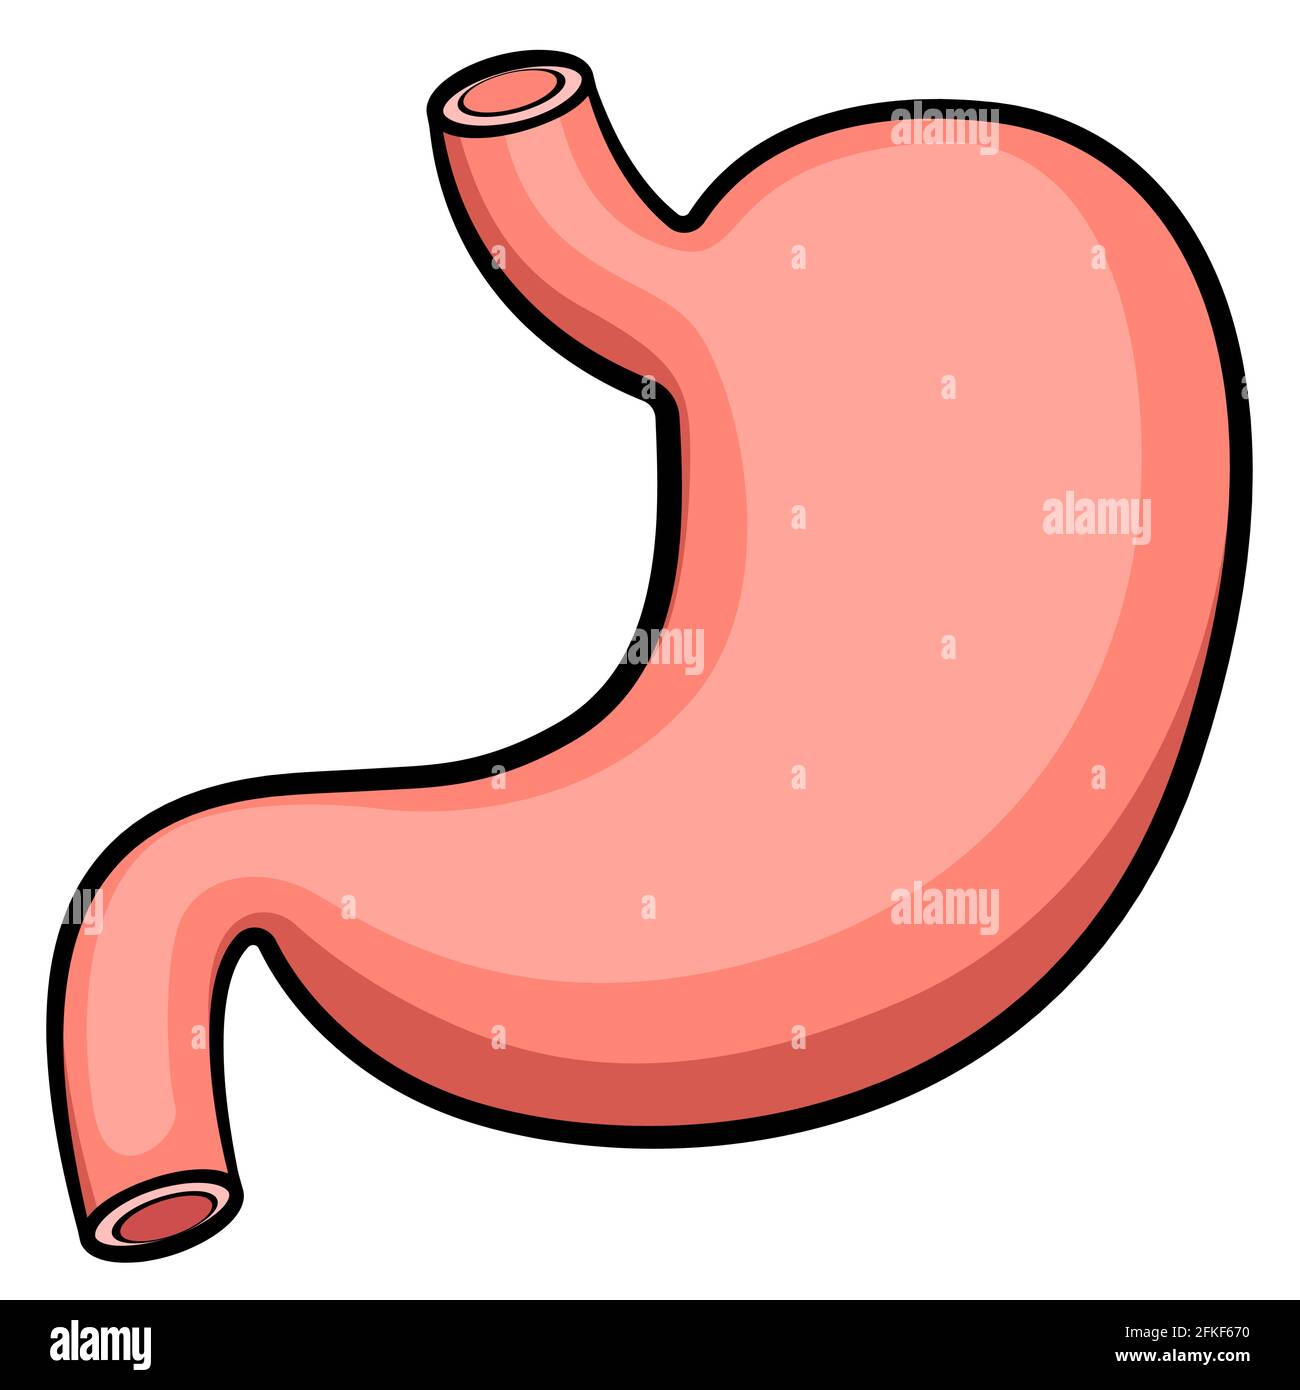 Illustrazione vettoriale dell'organo del sistema digestivo dello stomaco Illustrazione Vettoriale